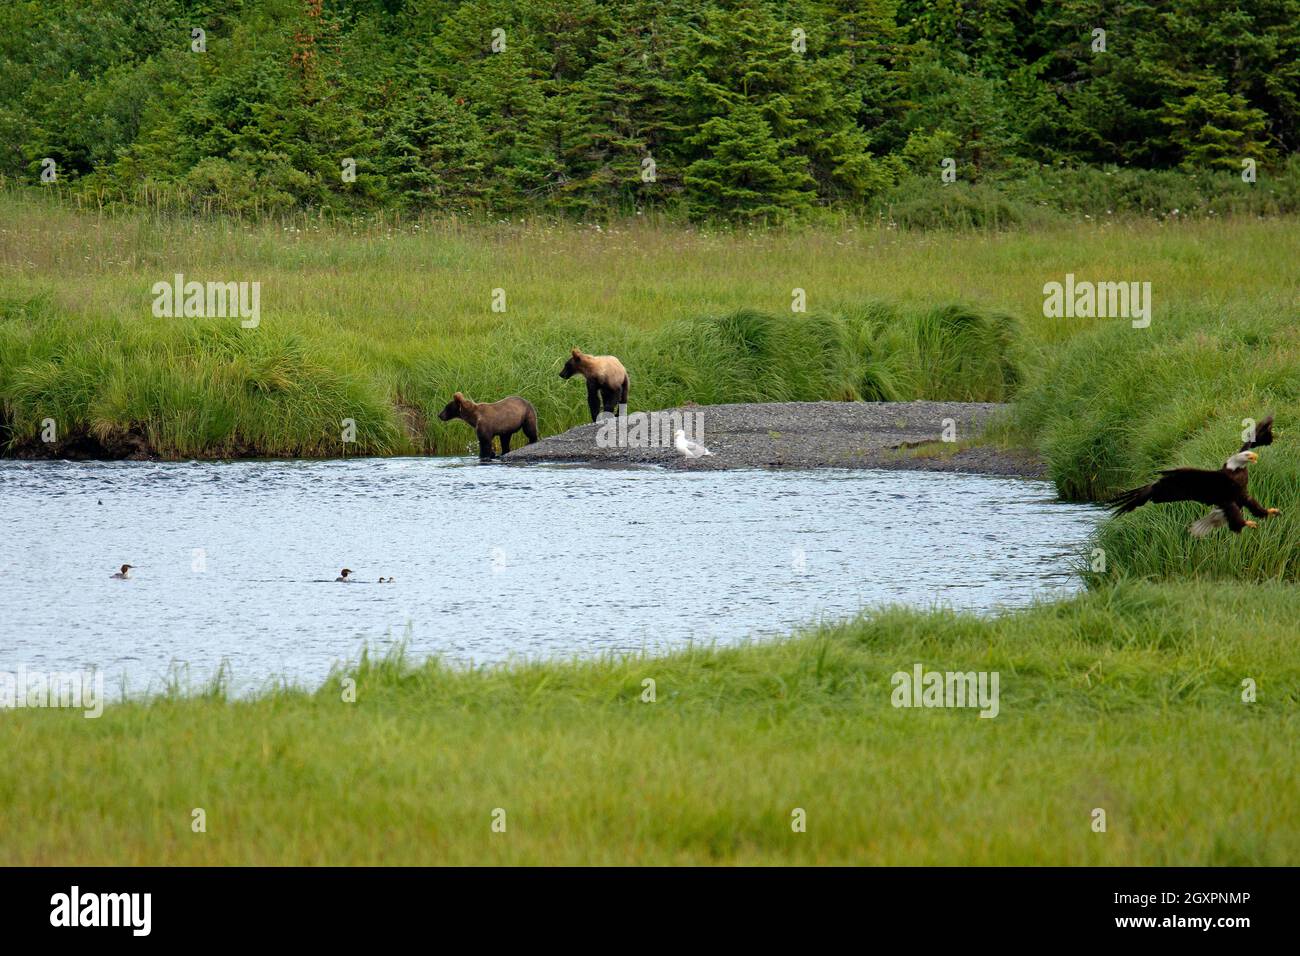 Un guette ailé glacous, Larus glaucescens, deux ours bruns, Ursus arctos, et un aigle à tête blanche, Haliaeetus leucocephalus, près d'une rivière, Cordova, Alaska, ÉTATS-UNIS Banque D'Images